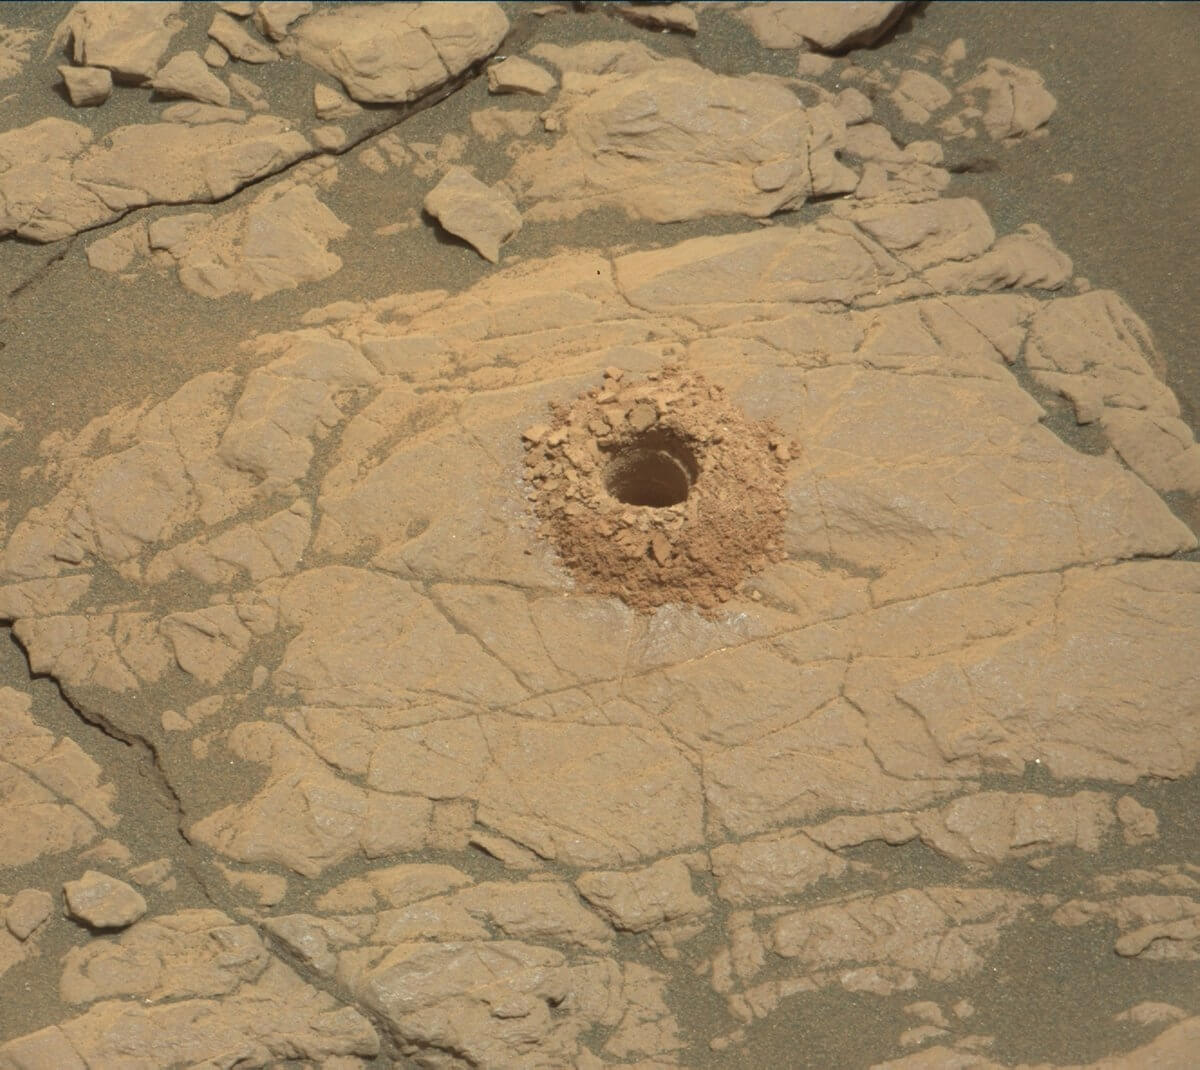 Отверстие на поверхности Марса